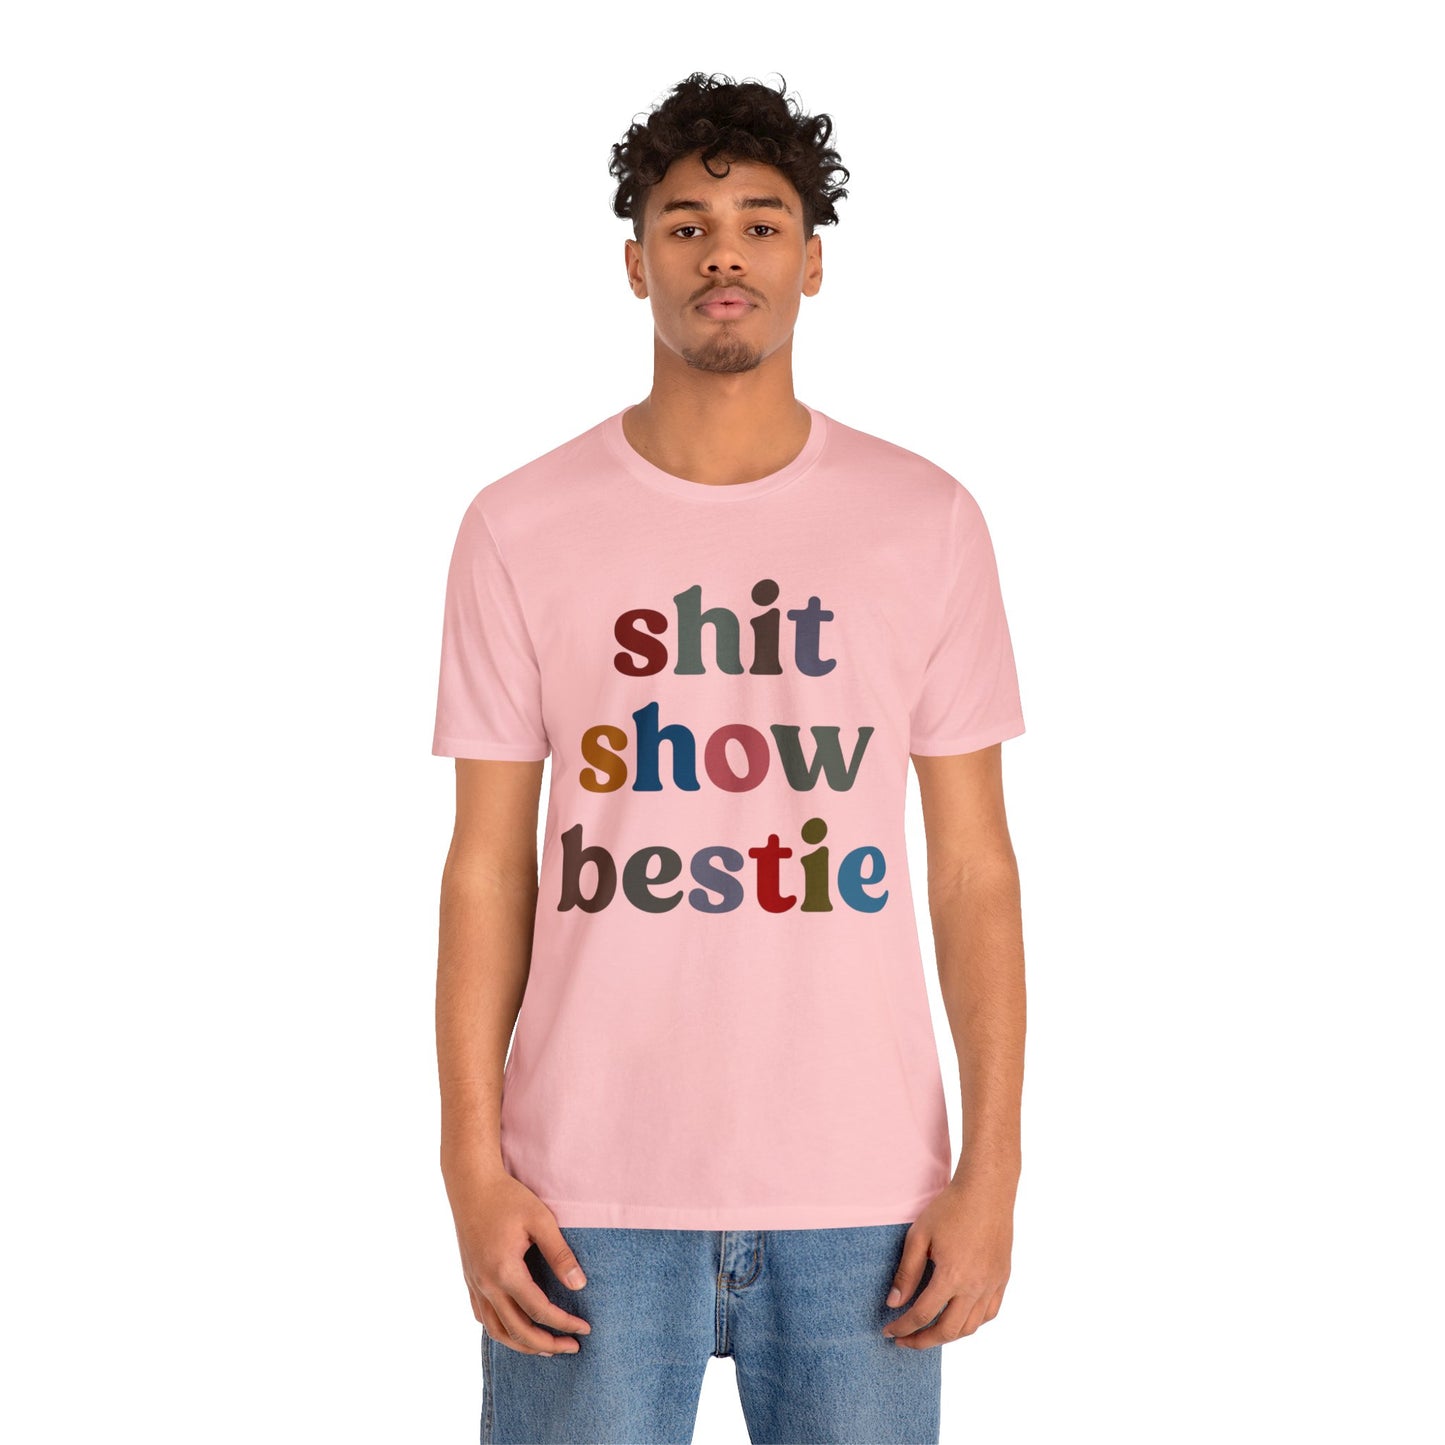 Shit Show Bestie Shirt, BFF Shirt for Women, Funny Best Friend Shirt, Forever Bestie Shirt, Matching Besties Shirt, Best Friend Gift, T1305